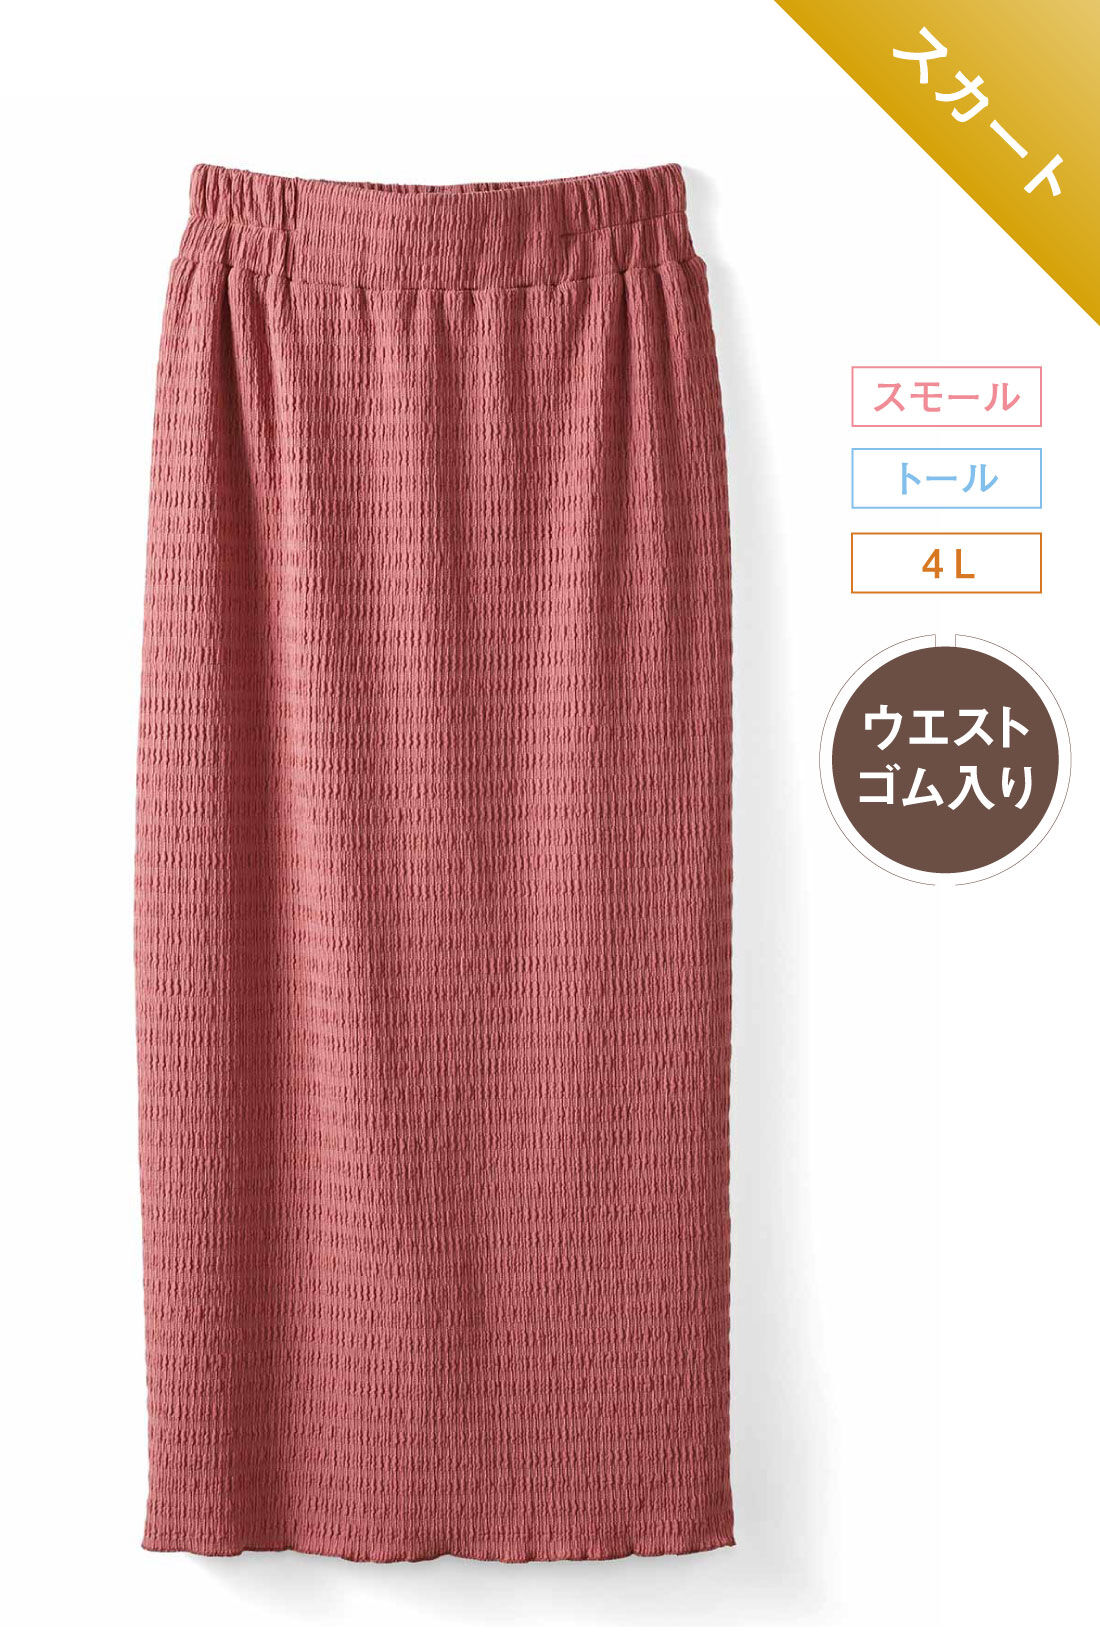 IEDIT|ふくれ ジャカード カットソー素材 Iライン スカート〈ピンク〉のコーディネート